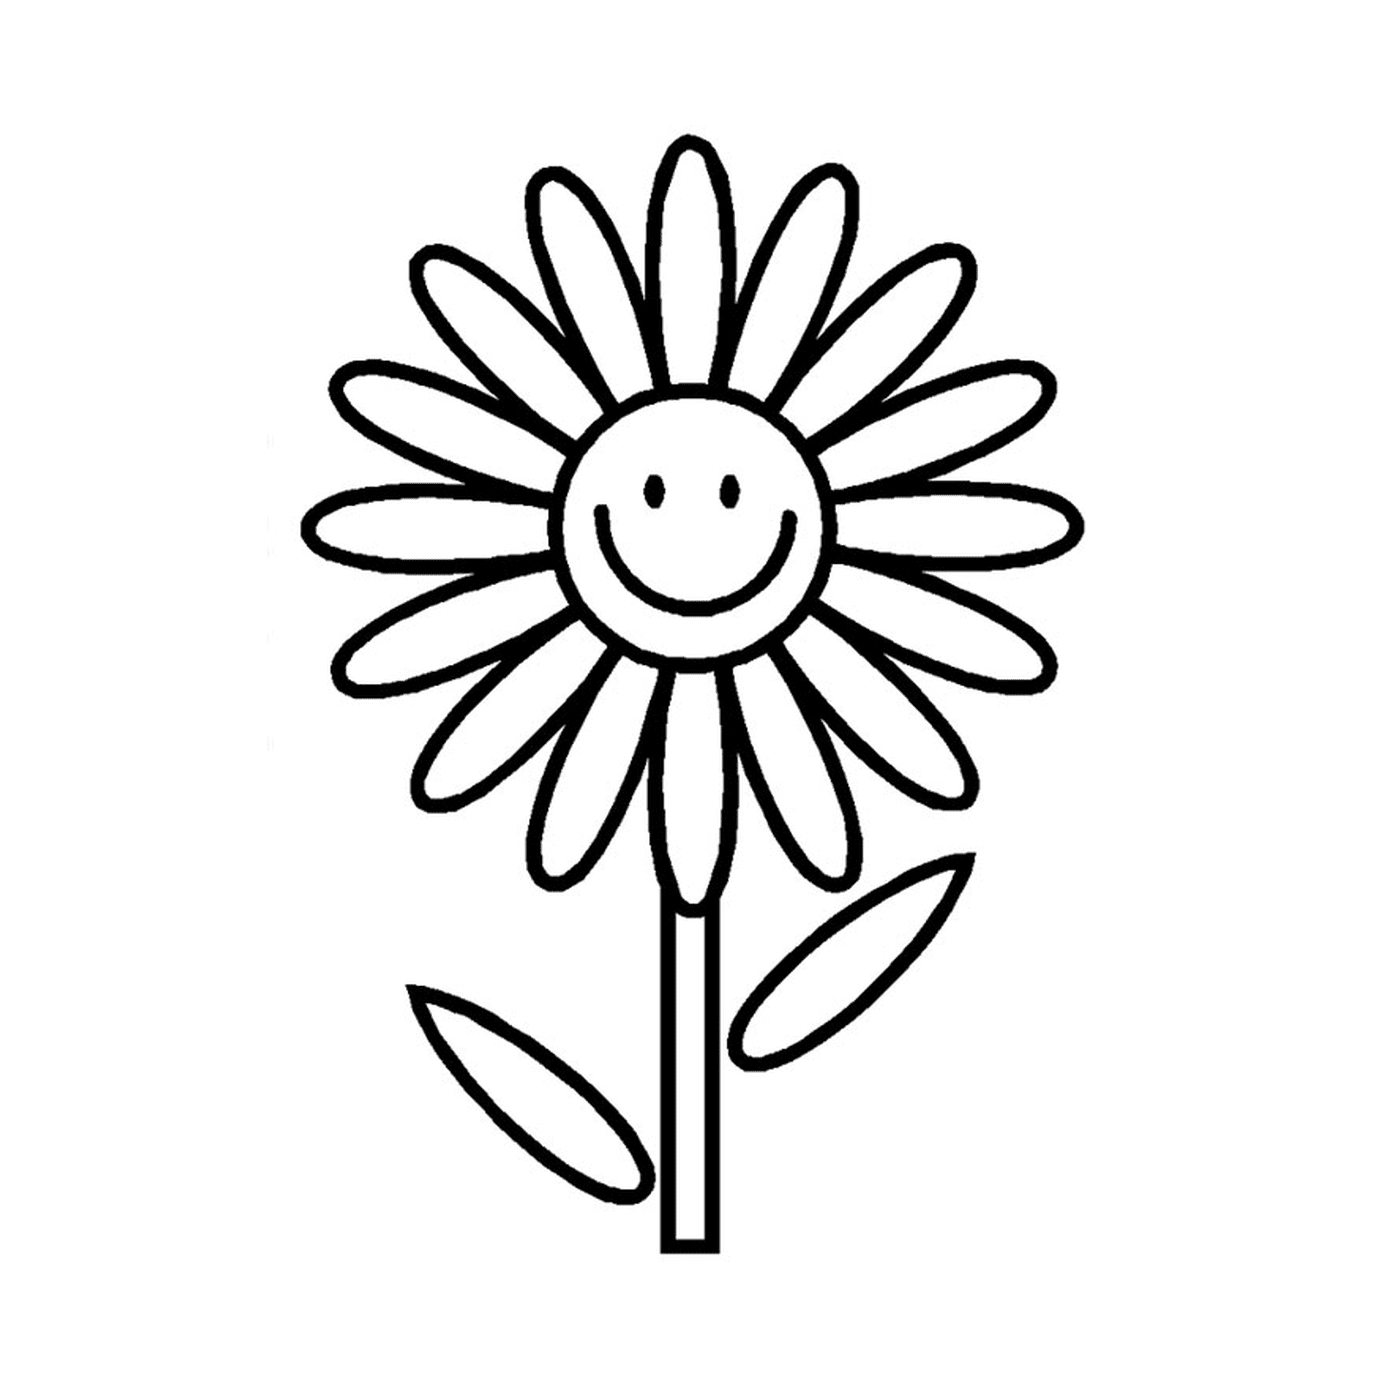   Une fleur simple avec un visage souriant 